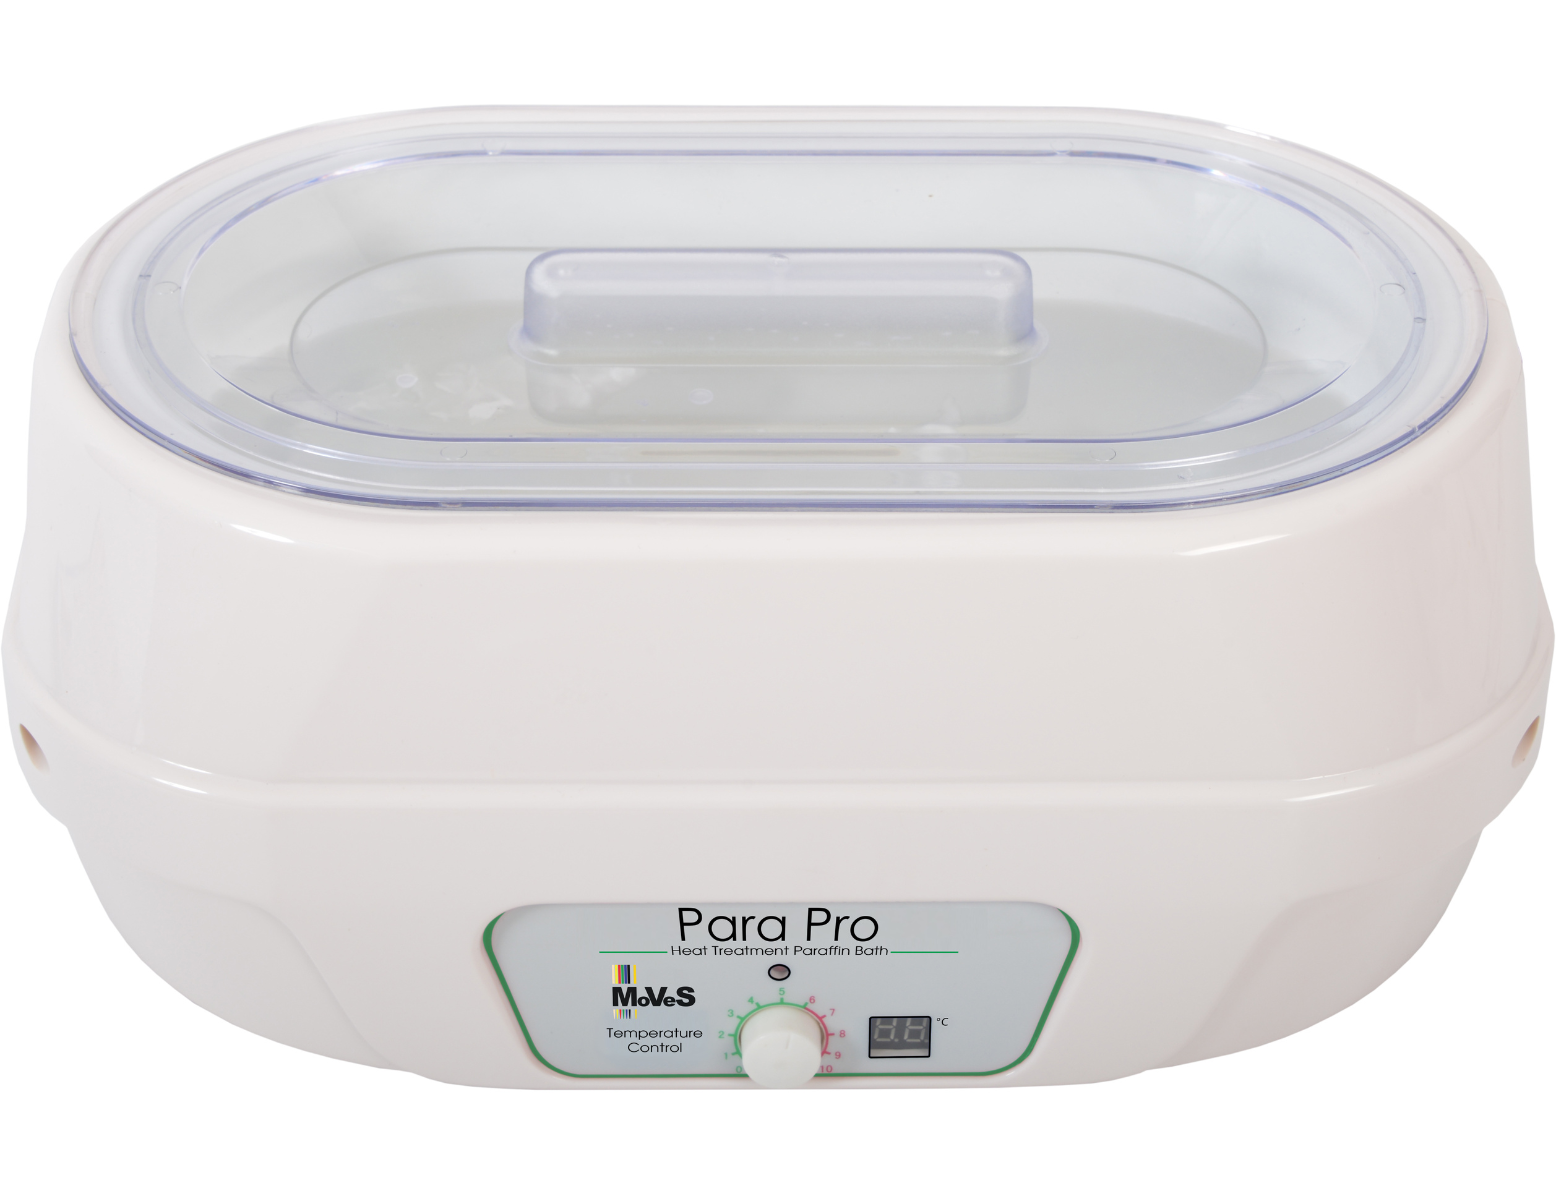 MoVeS Paraffinebad Pro + Paraffineparels (2,5 kg) - wit